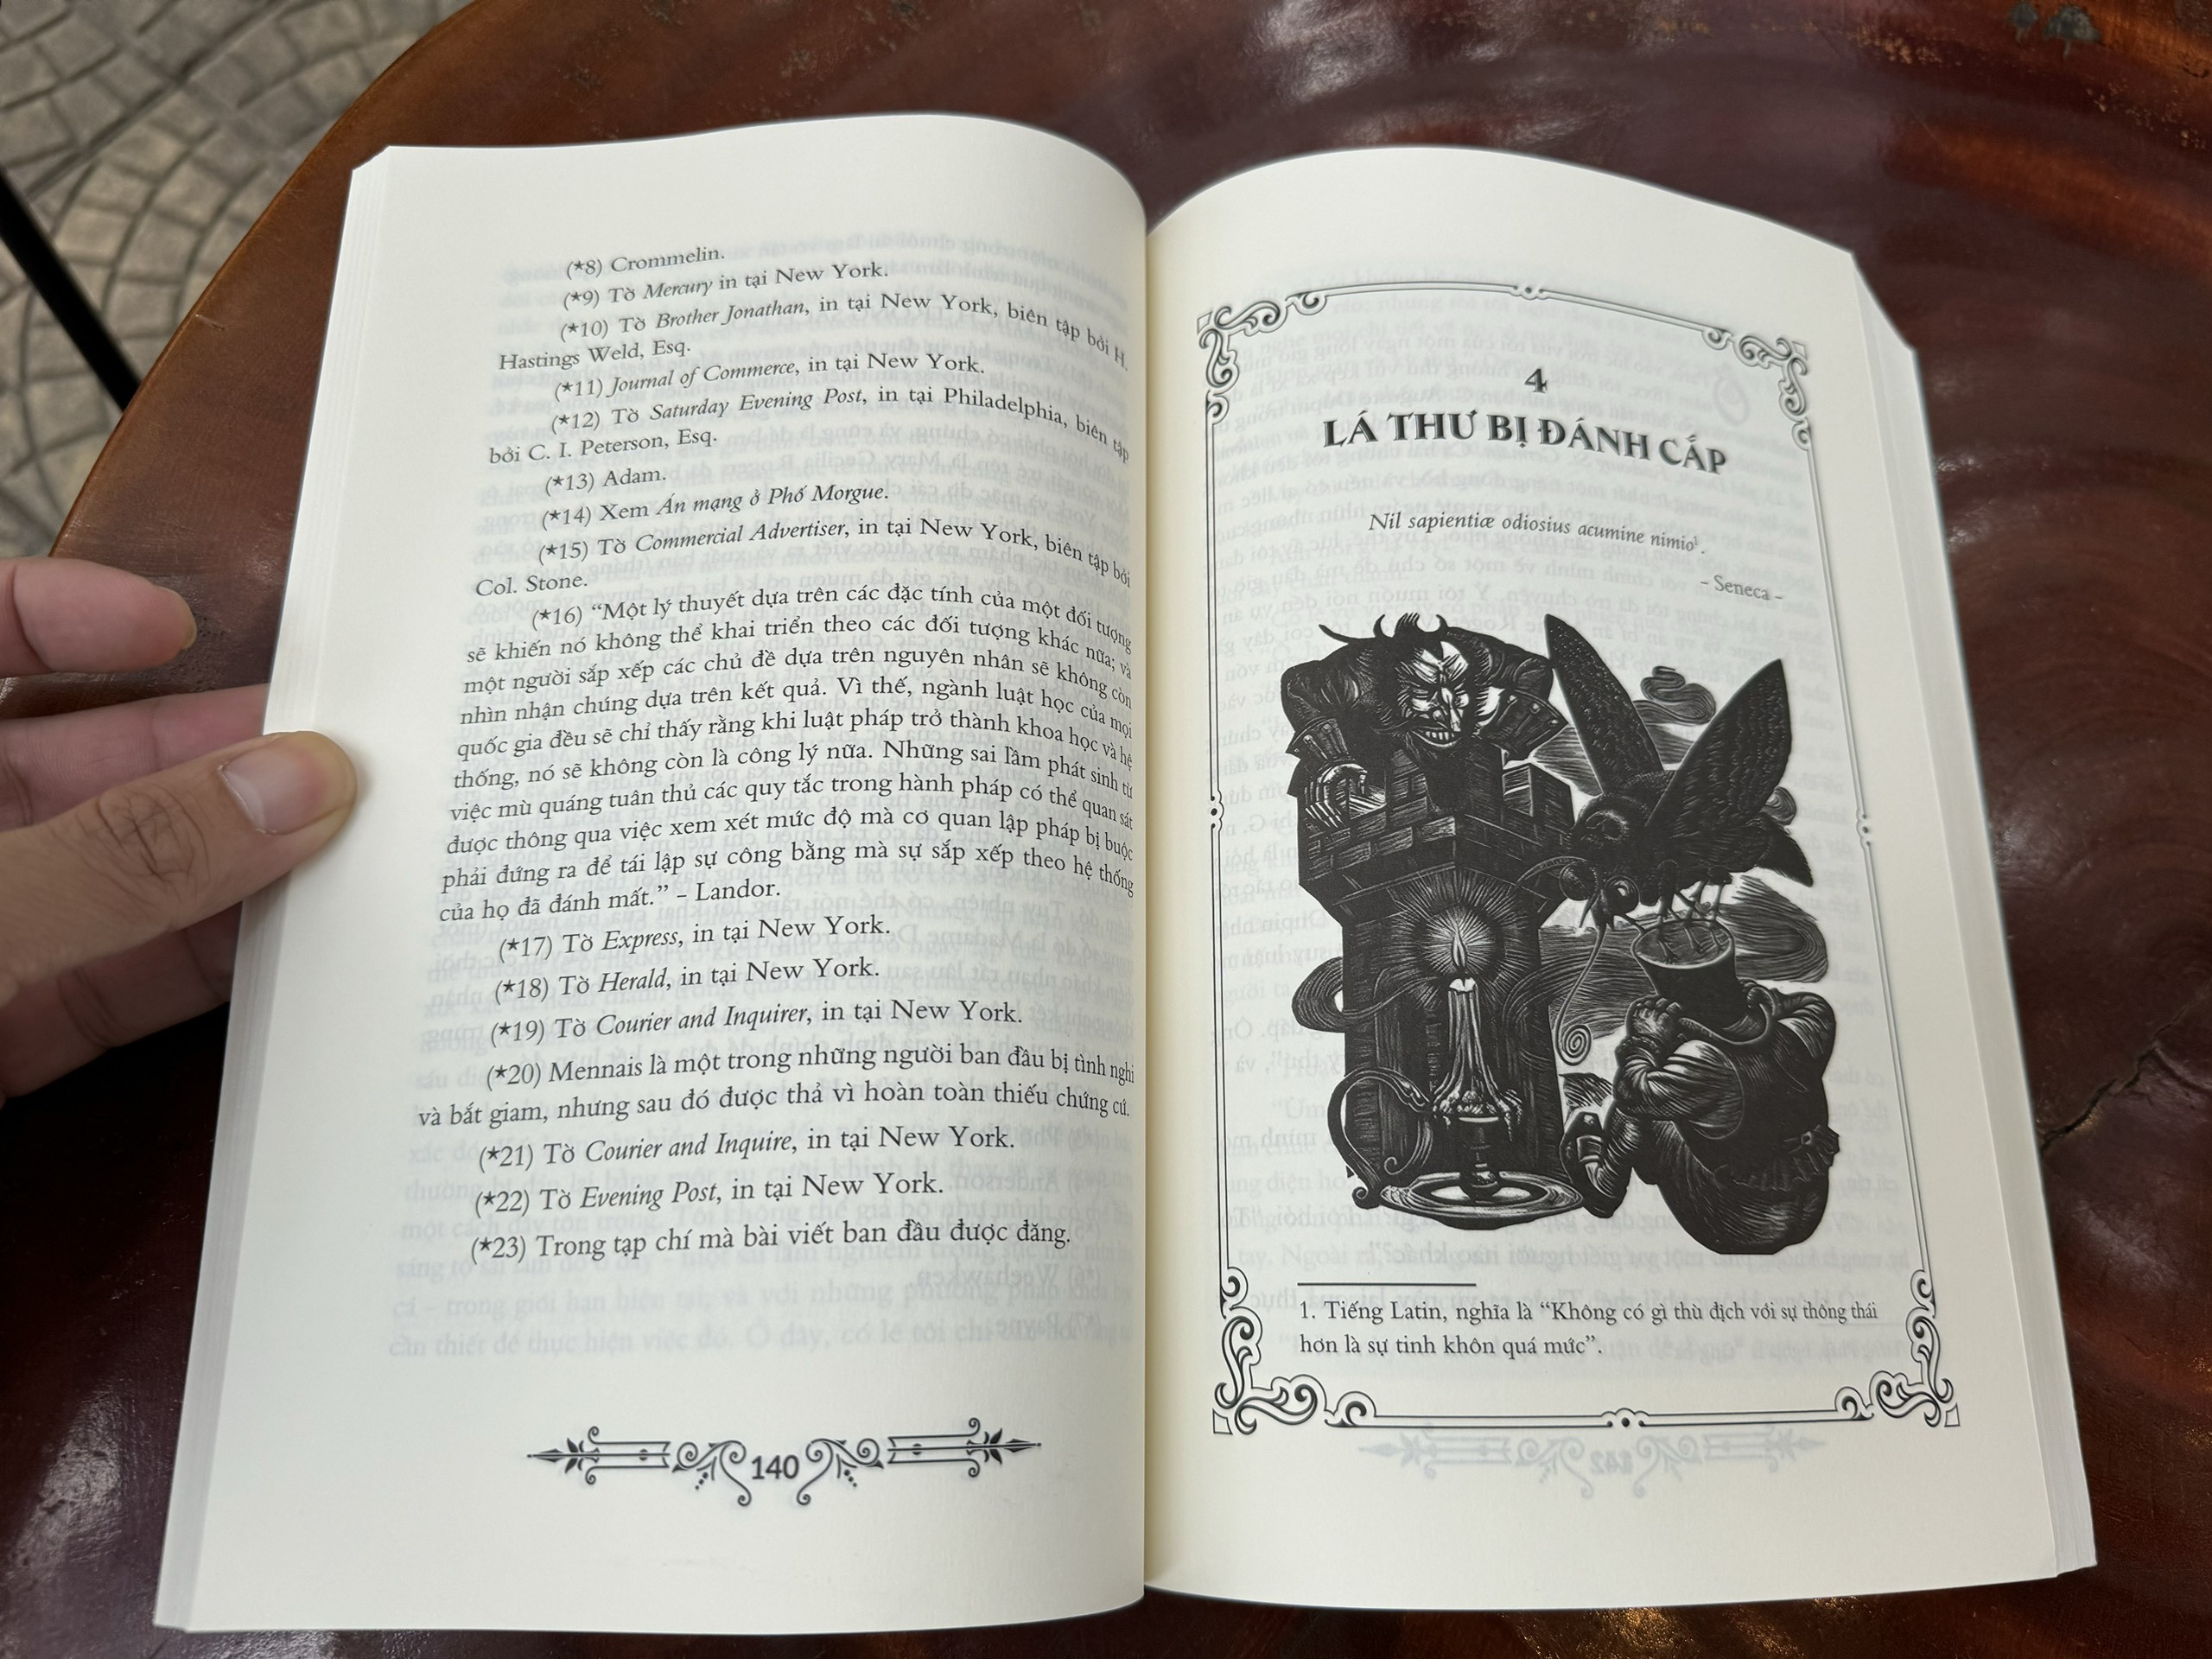 SỰ SỤP ĐỔ CỦA NHÀ USHER  – Edgar Allan Poe – Ngô Thế Vinh dịch - NXB Văn Học – Phúc Minh Books